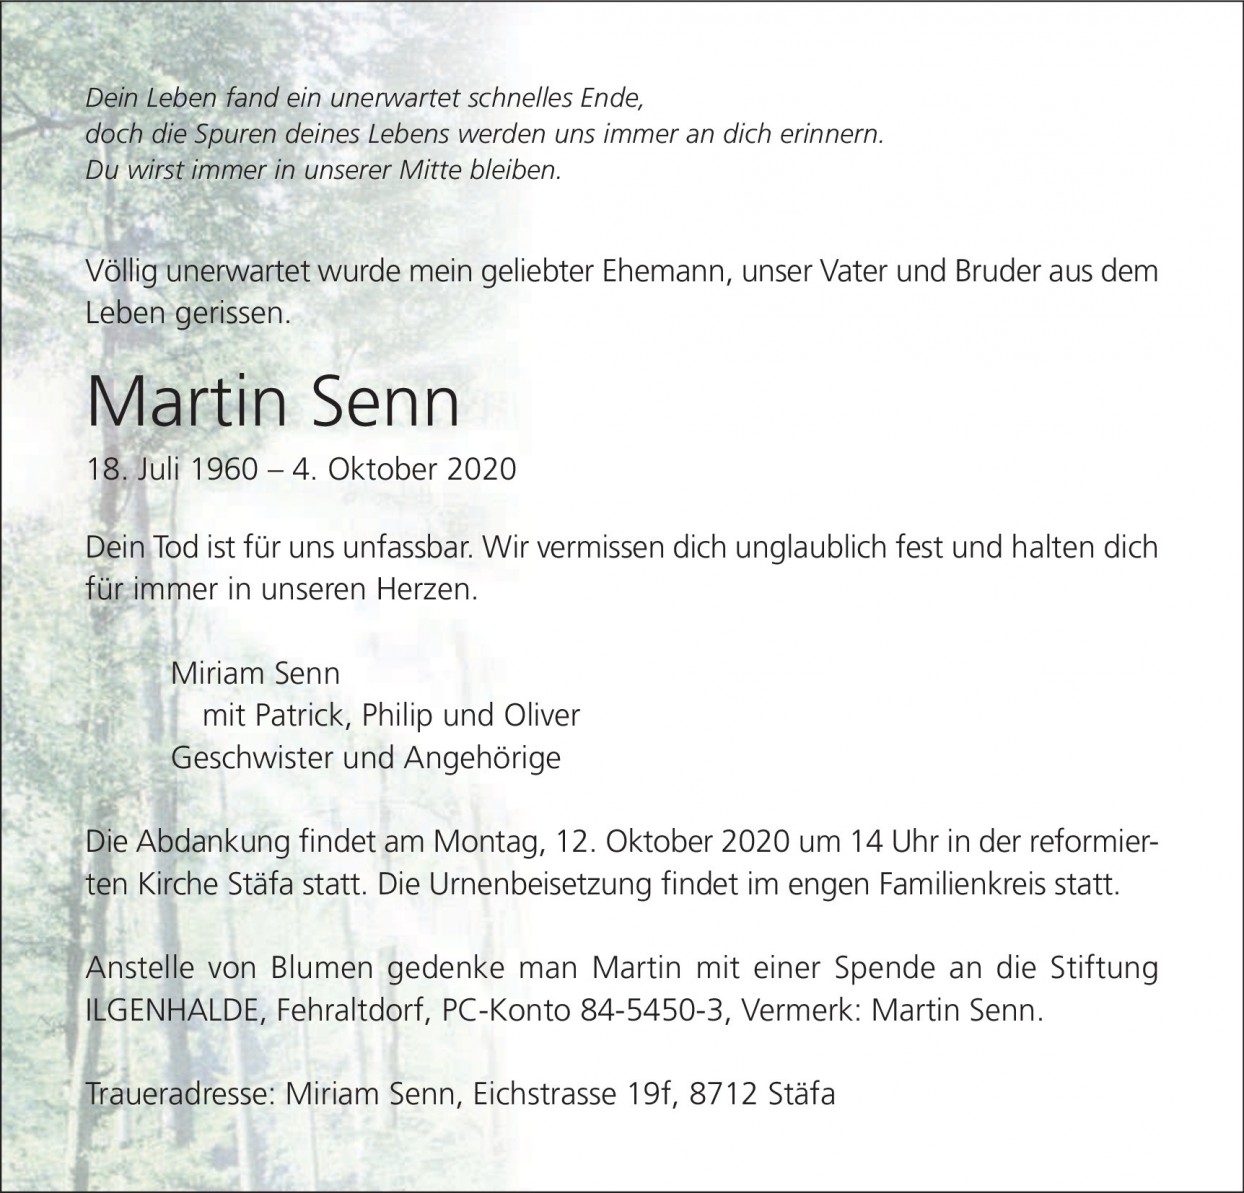 Martin Senn